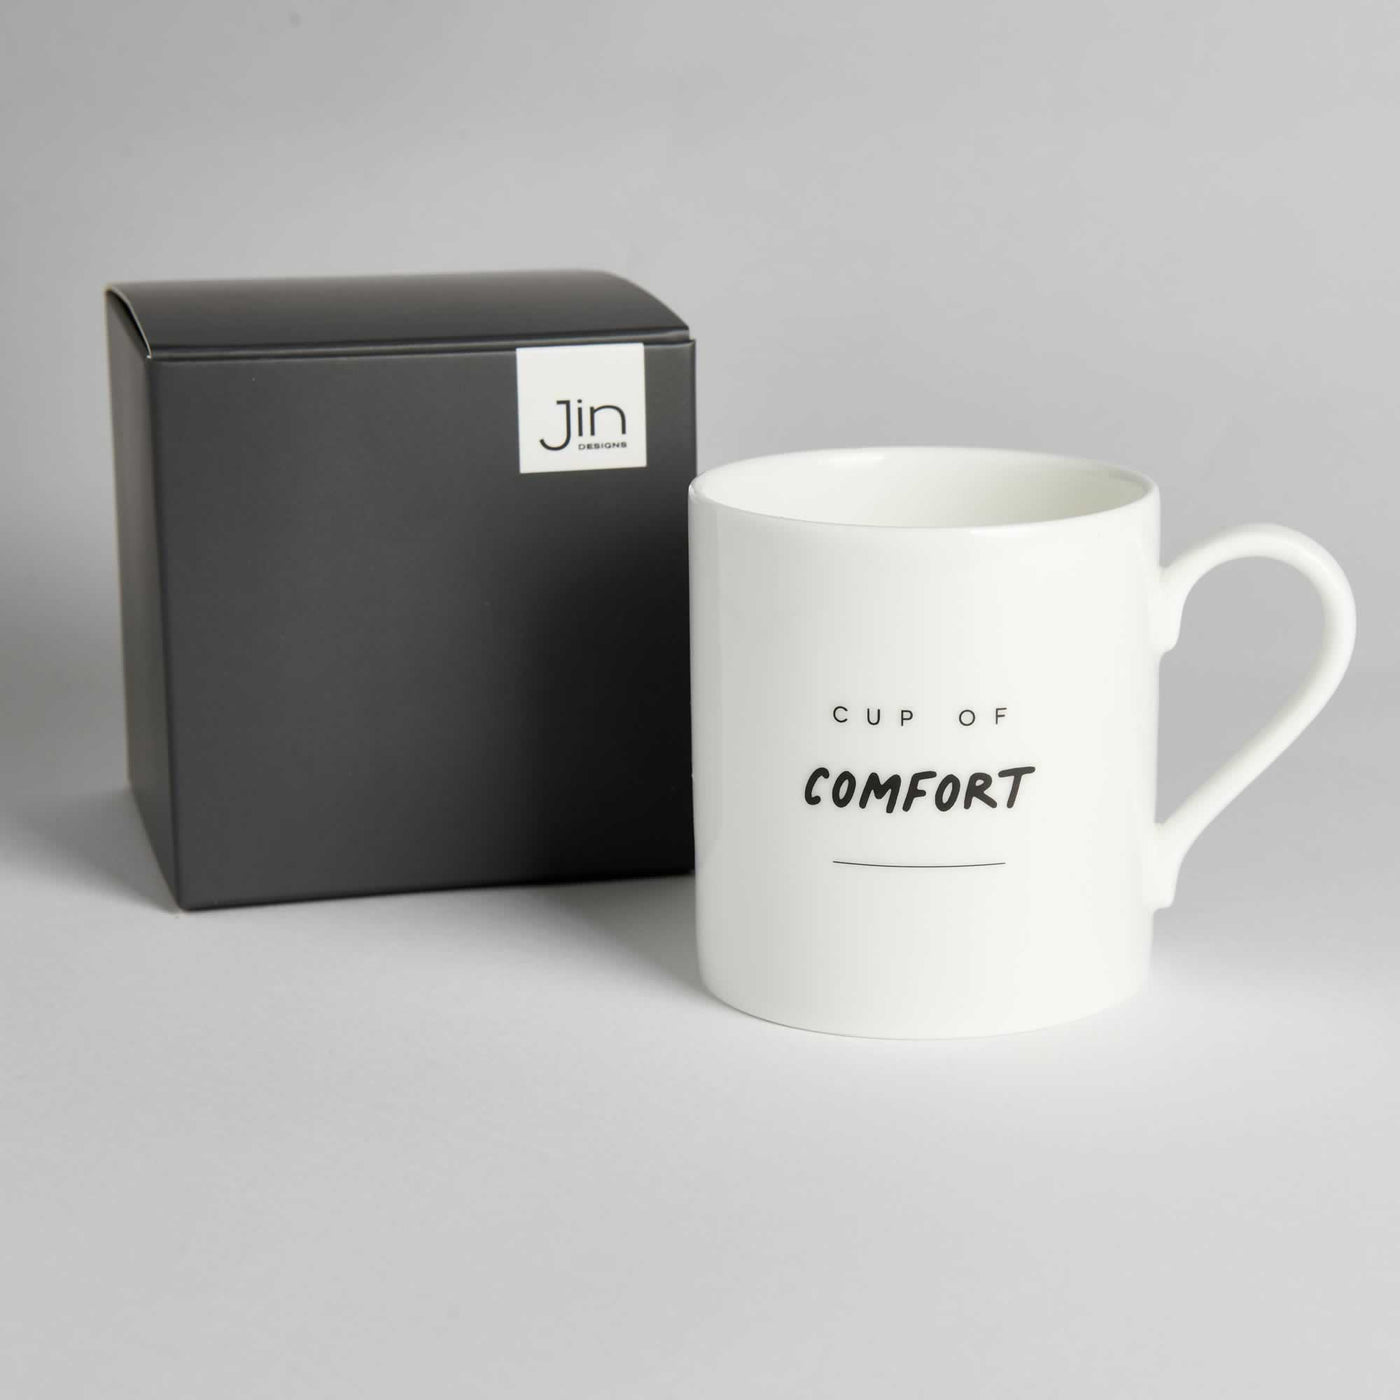 Cup of Comfort Mug with gift box